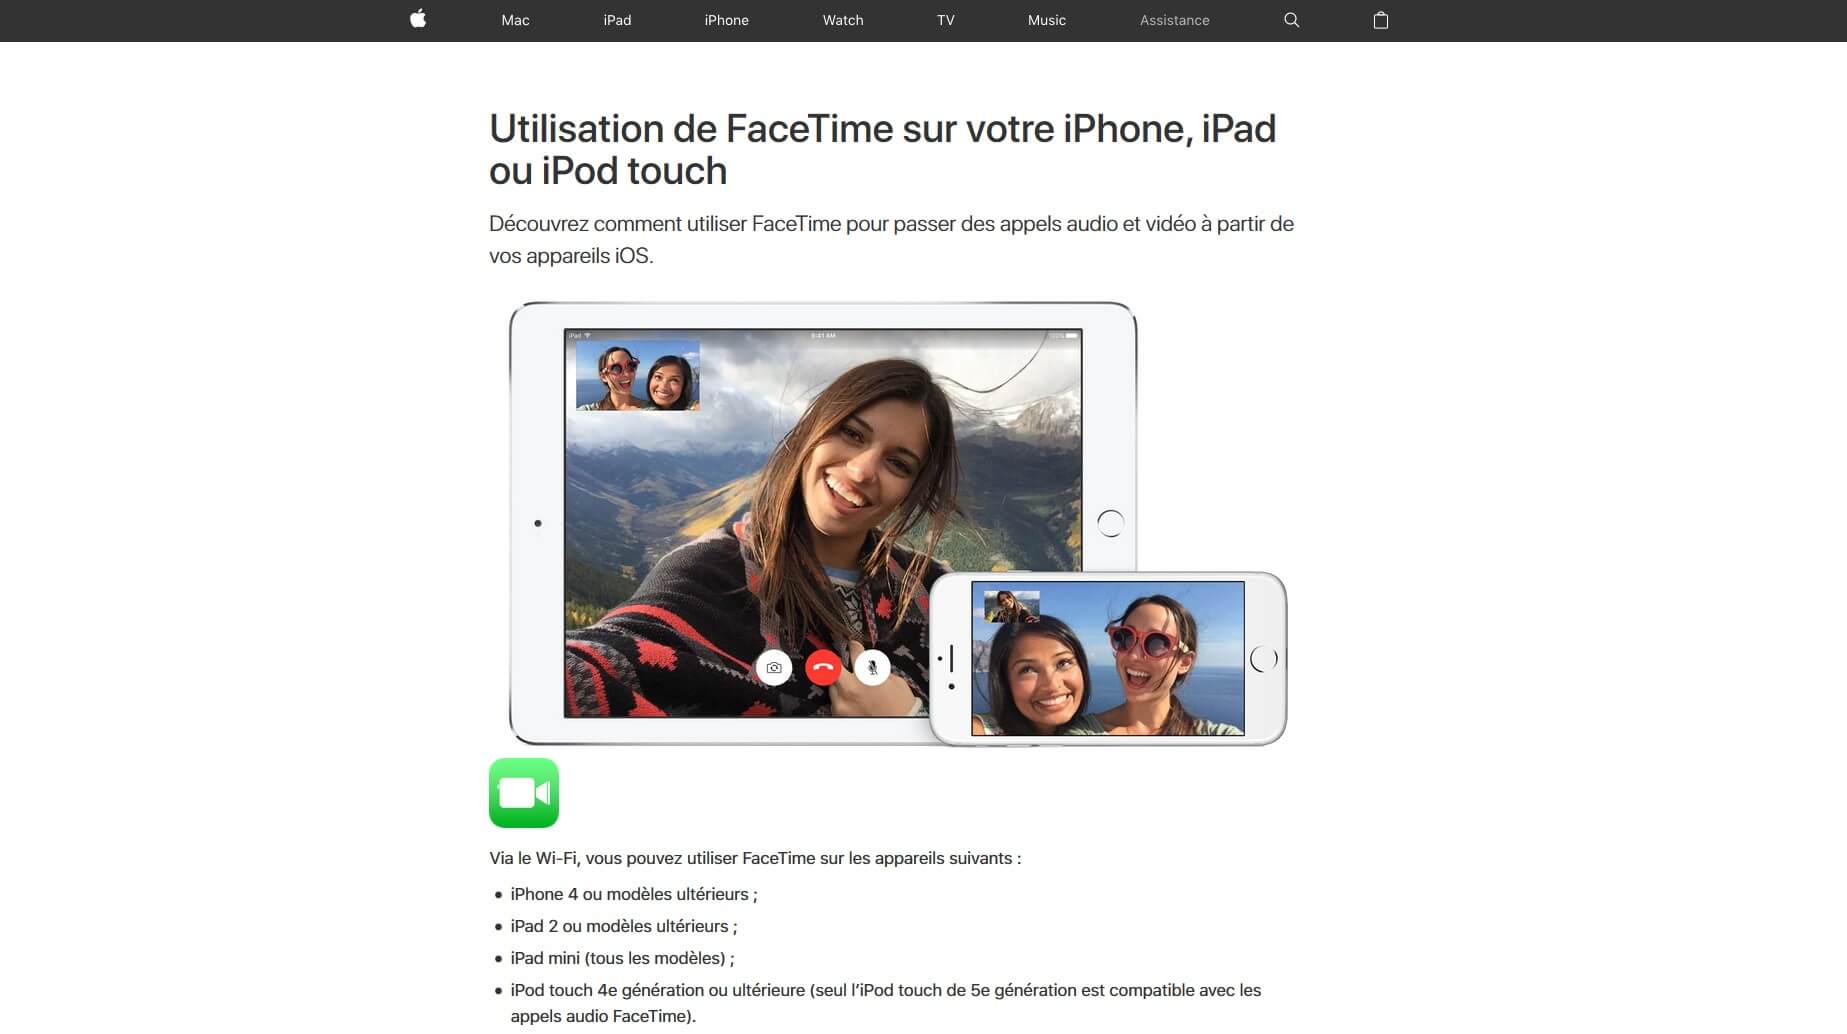 Capture d’écran de la page FaceTime sur le site Internet d’Apple